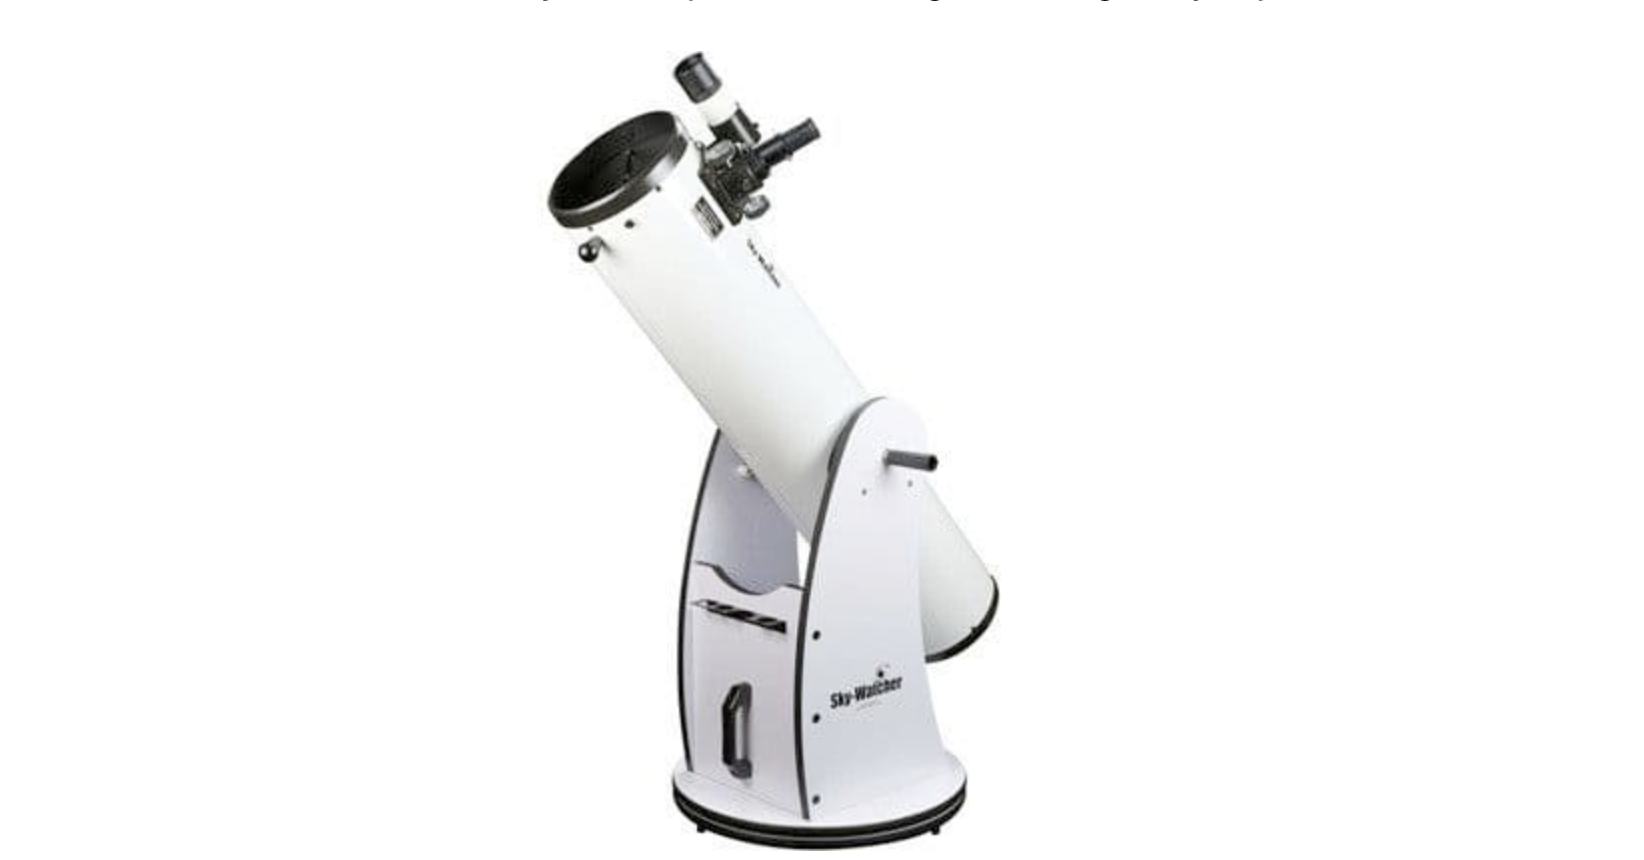 Sky-Watcher 200p Telescope